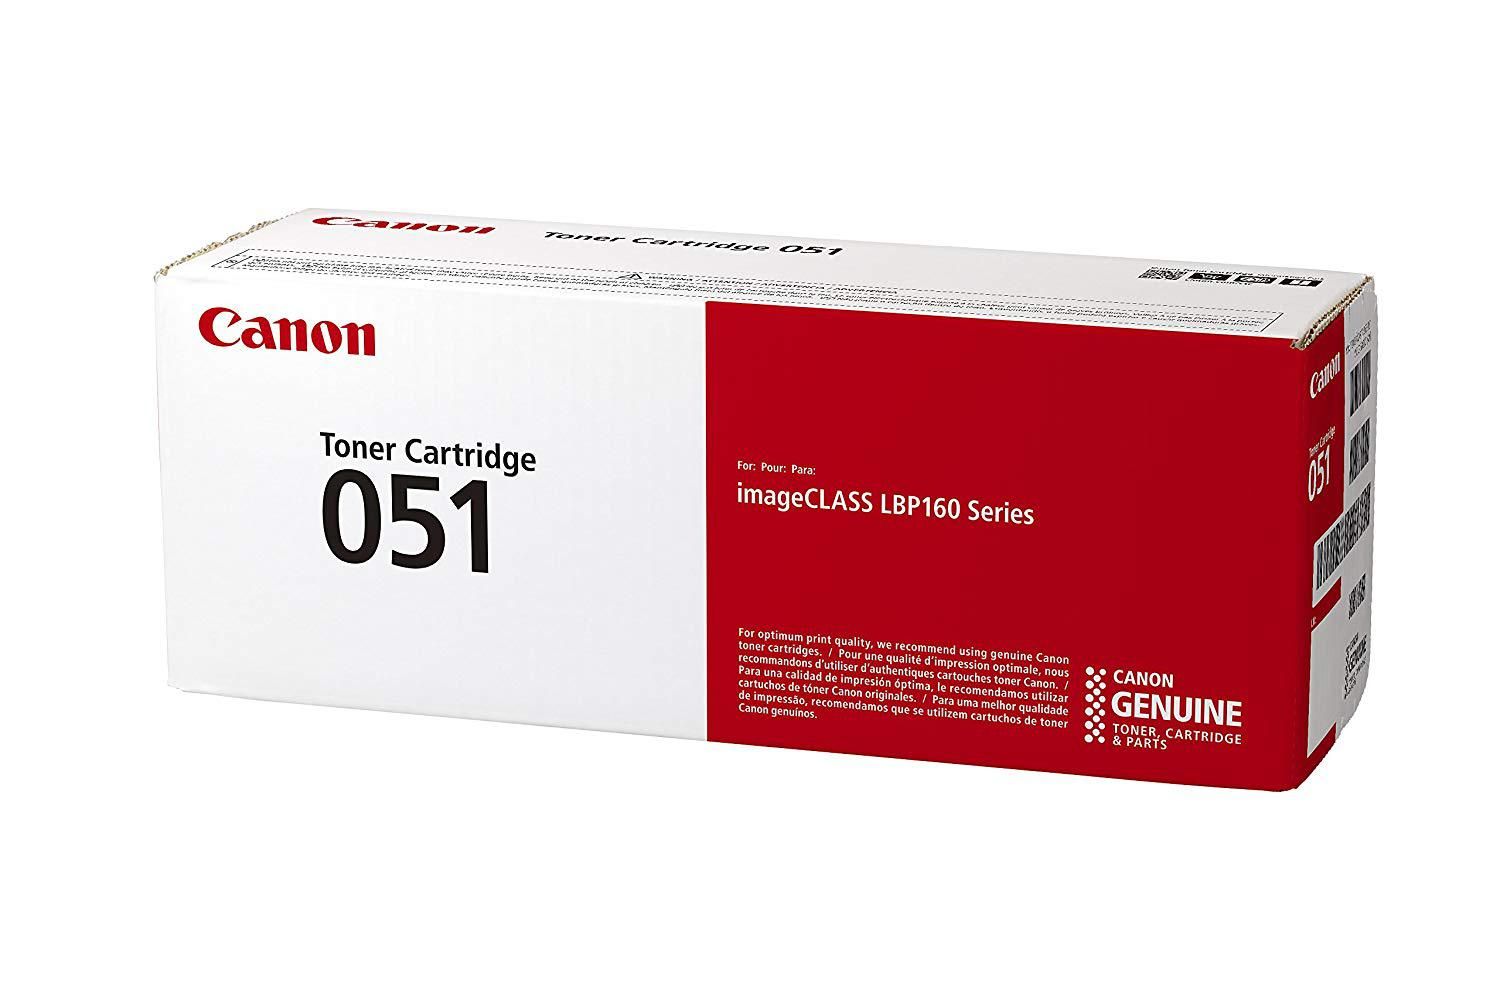 Toner CAMELLEON Yellow, CF412X-CP, compatibil cu HP M452|M477, 5K, incl.TV 0.8 RON, 